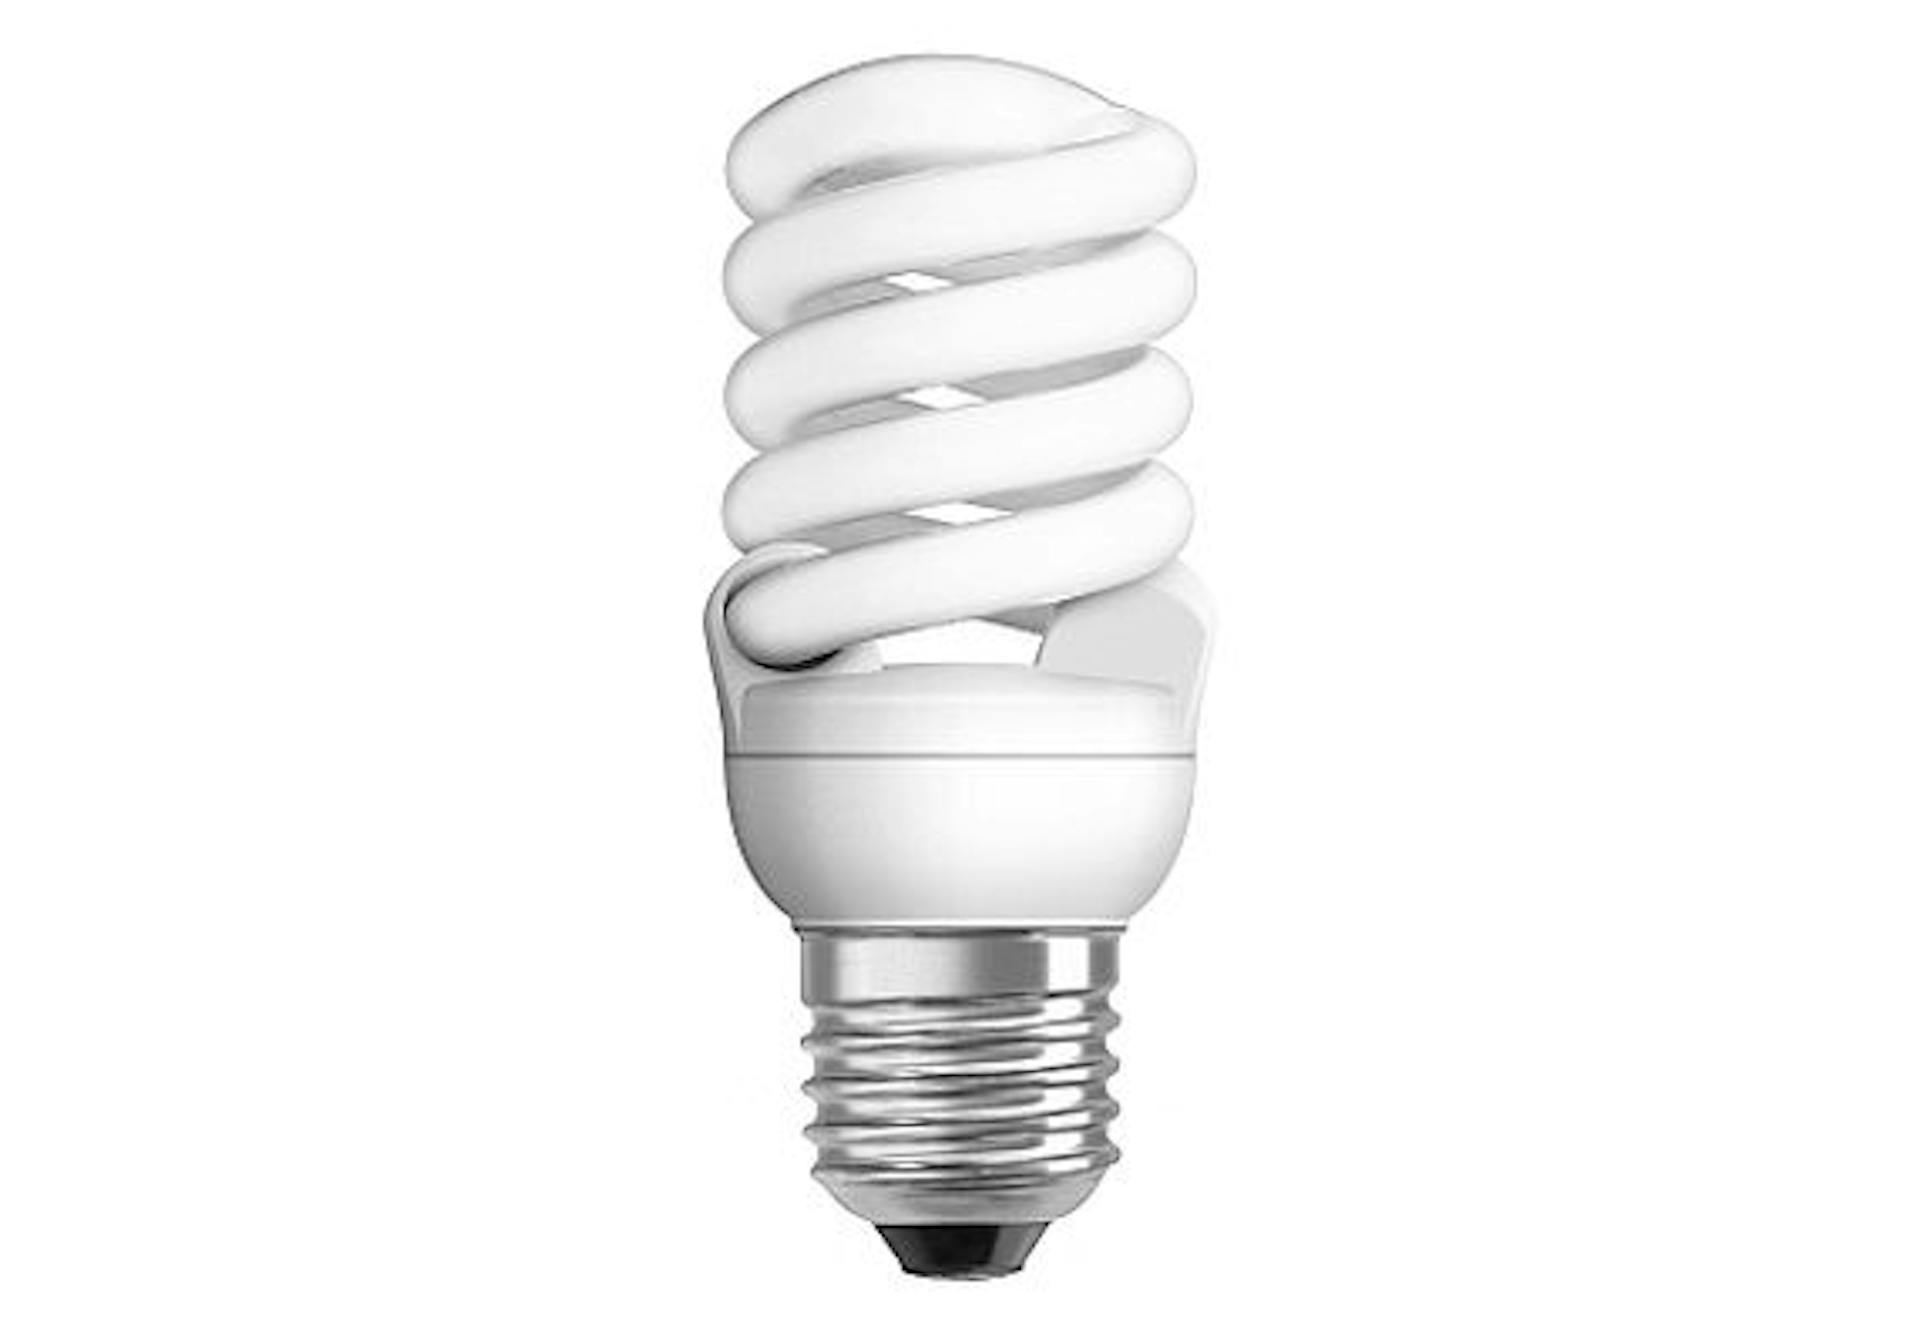 Halogène : l'ampoule devient interdite à la vente